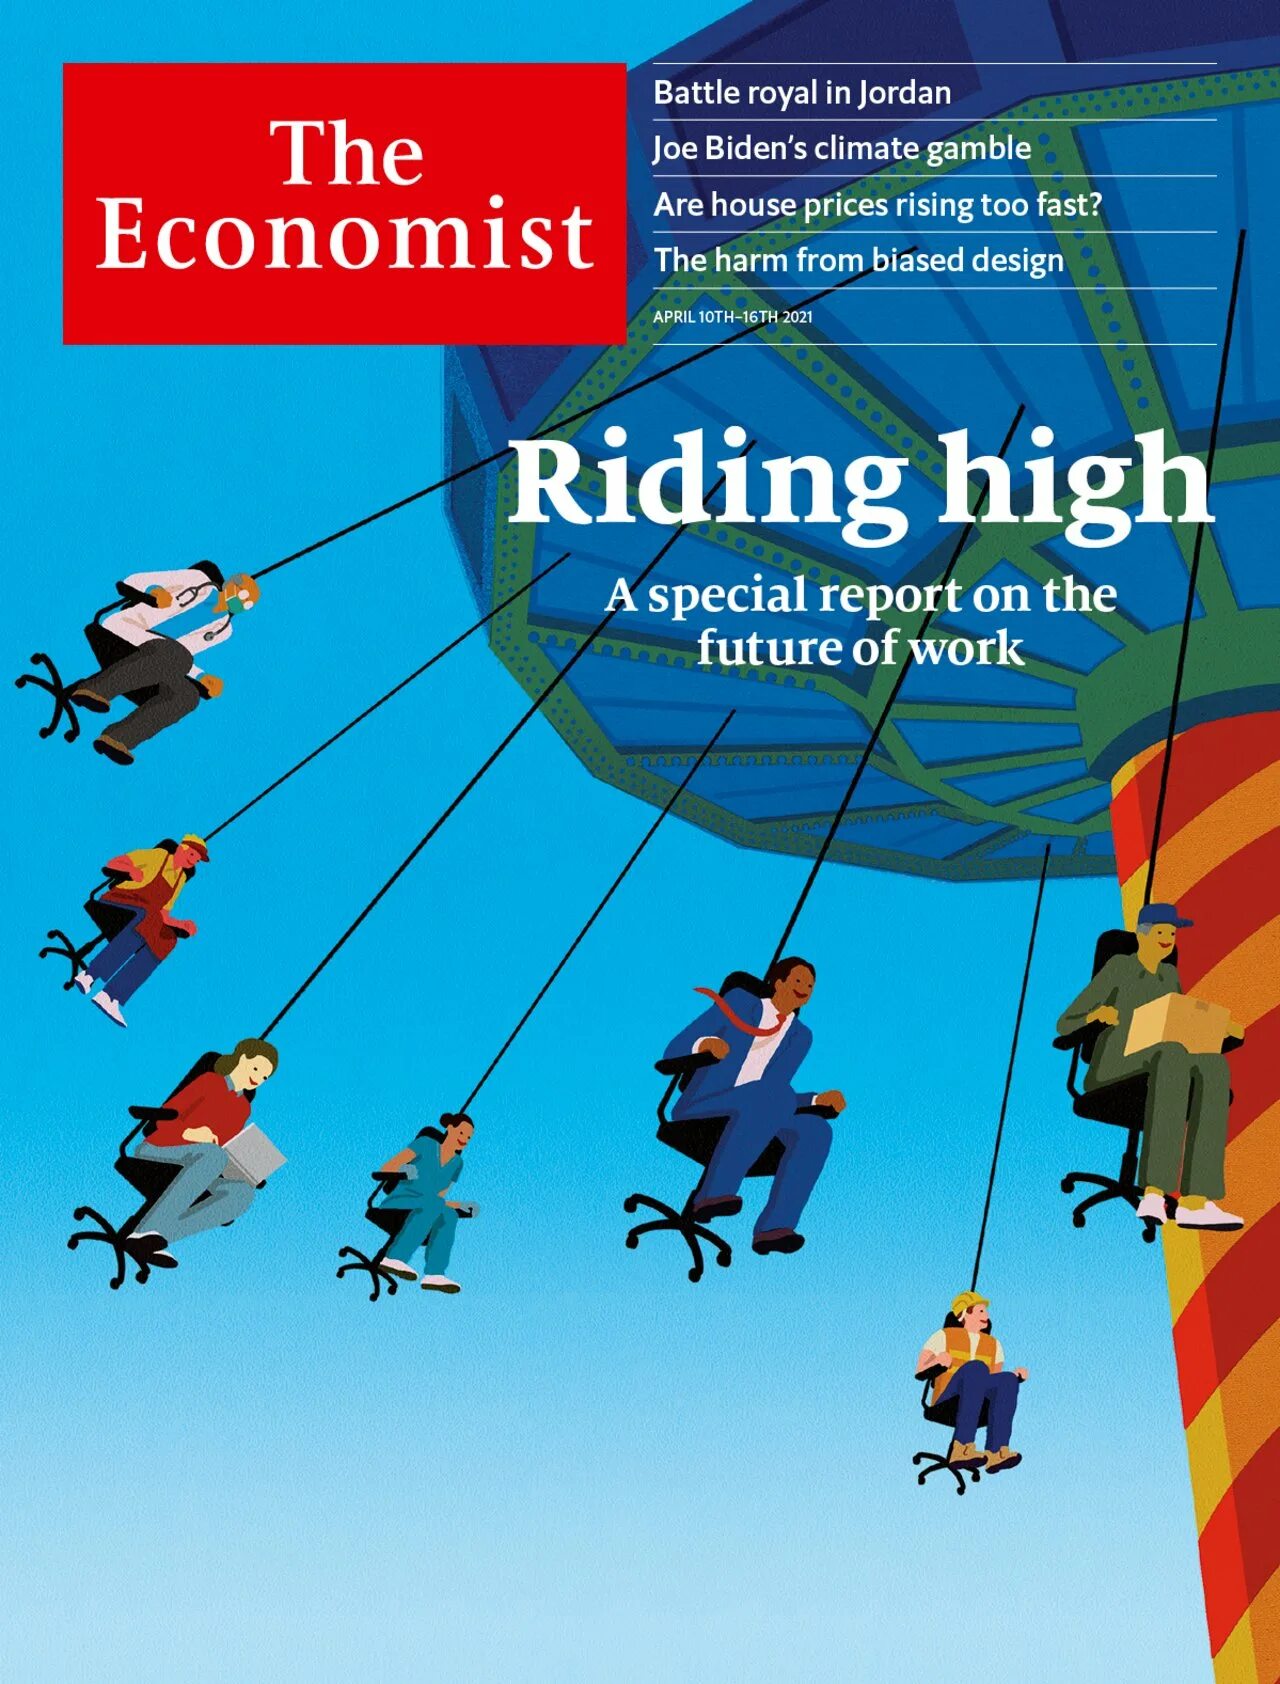 Обложка экономист. Обложка журнала экономист. The Economist 2021 обложка. Журнал the Economist 2021.